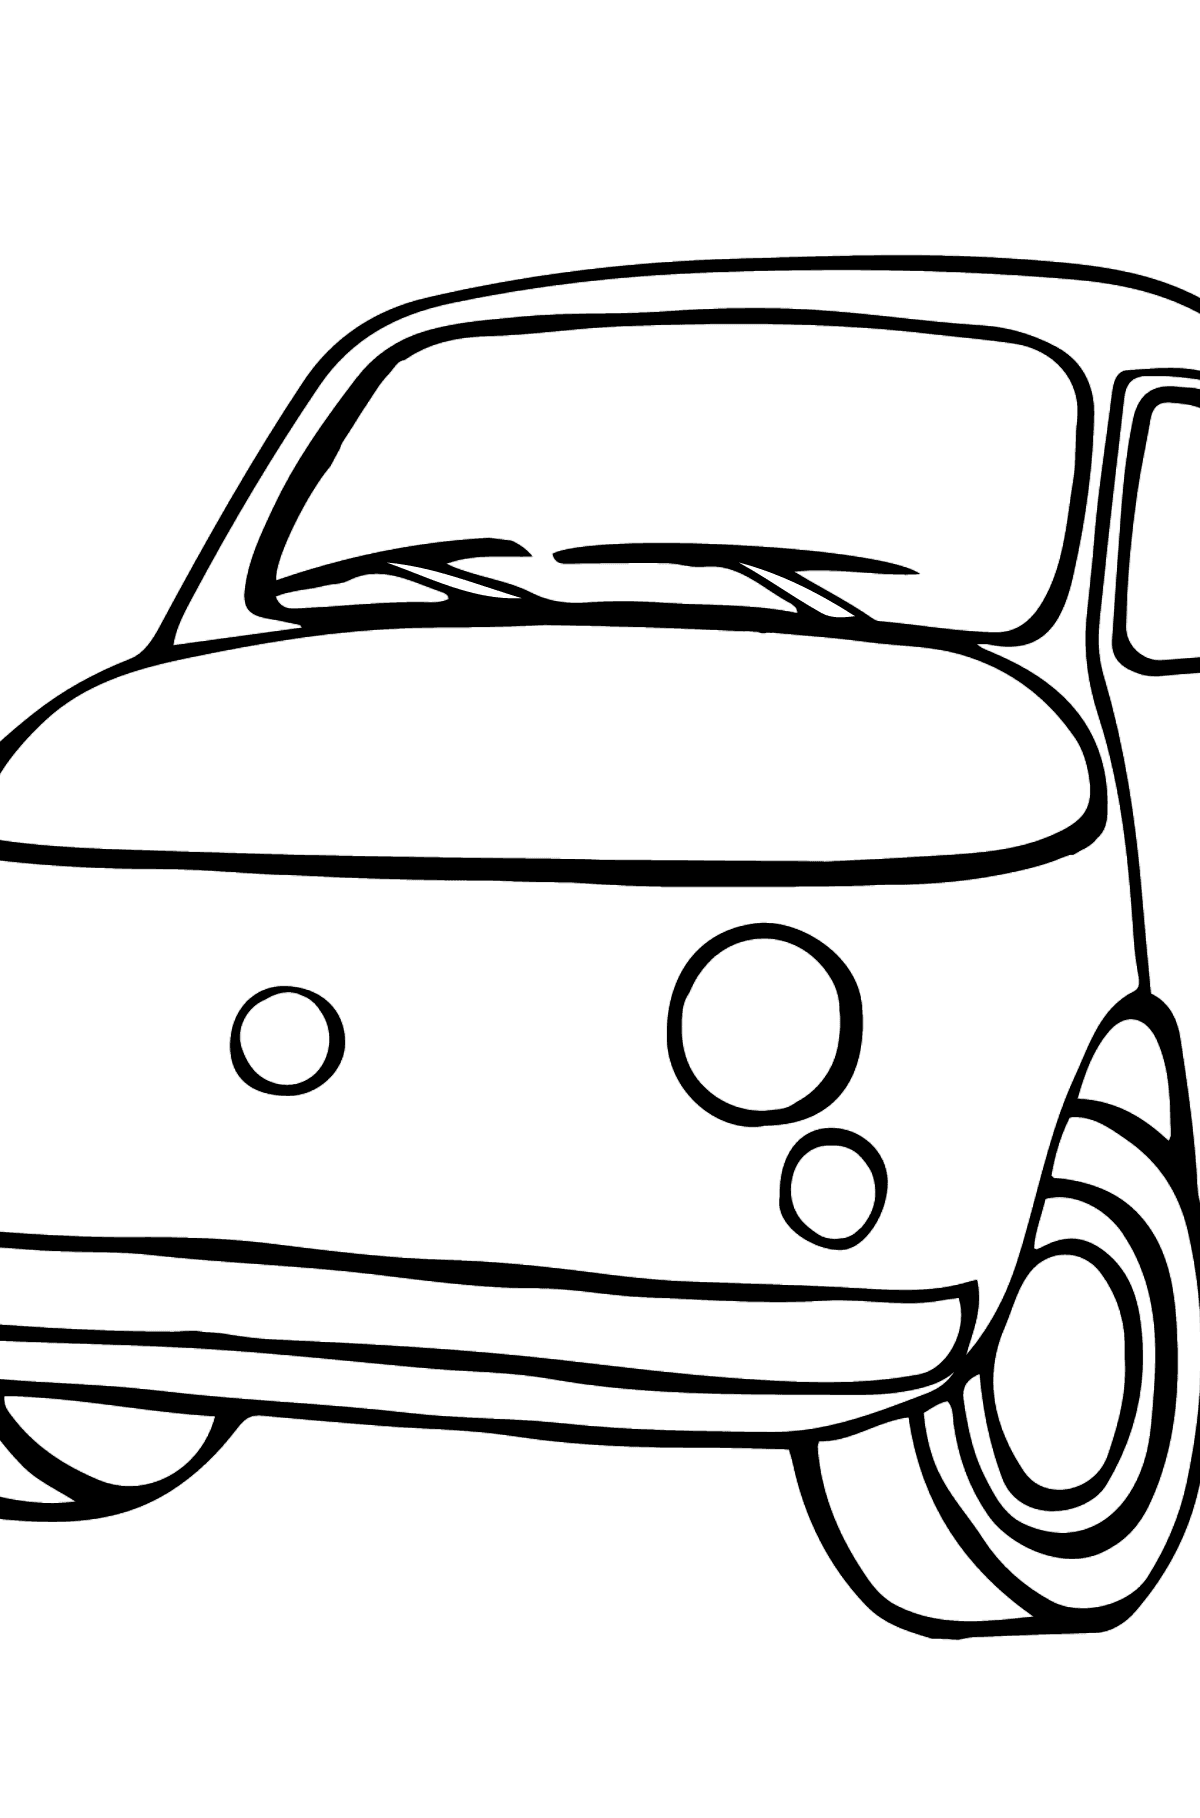 Tegning til fargelegging Fiat bil for barn - Tegninger til fargelegging for barn